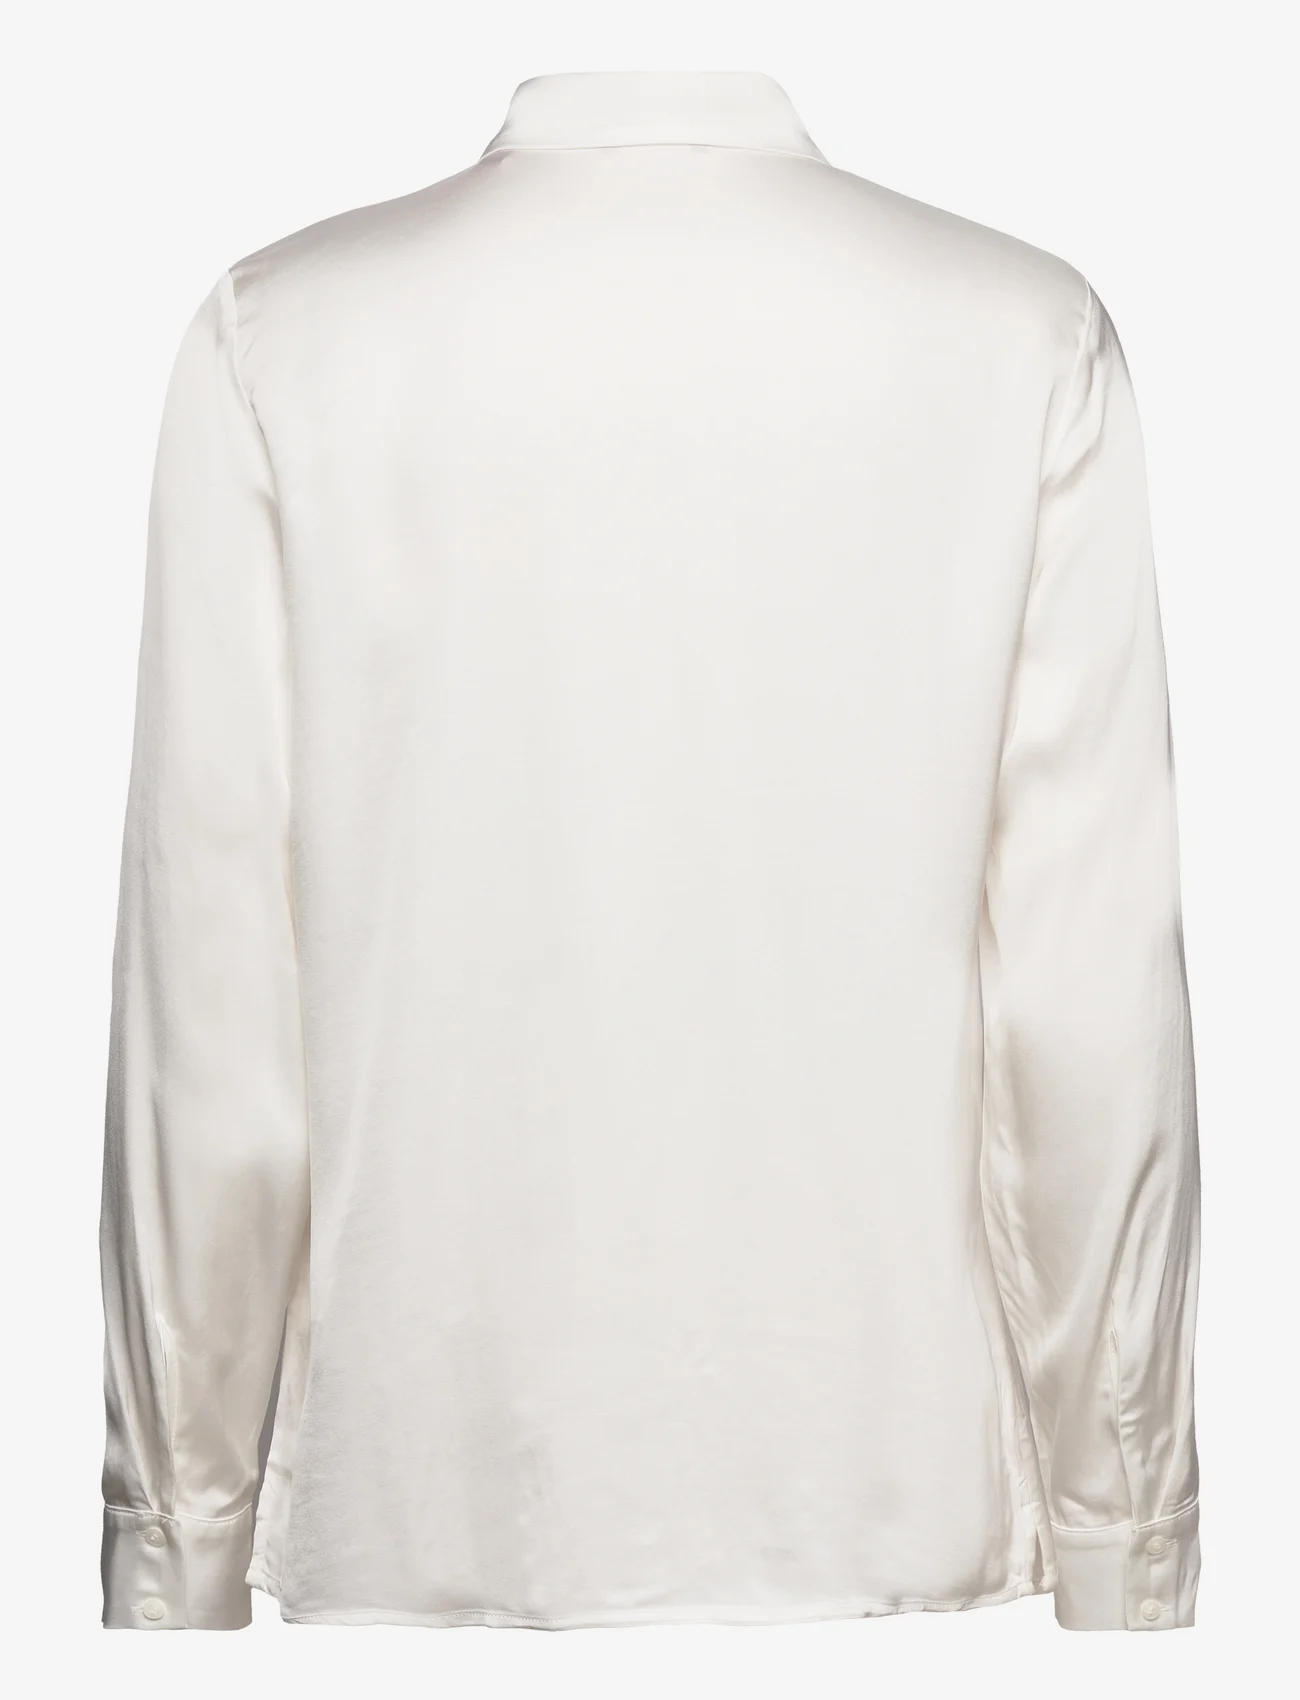 Esprit Casual - Blouses woven - langärmlige blusen - off white - 1